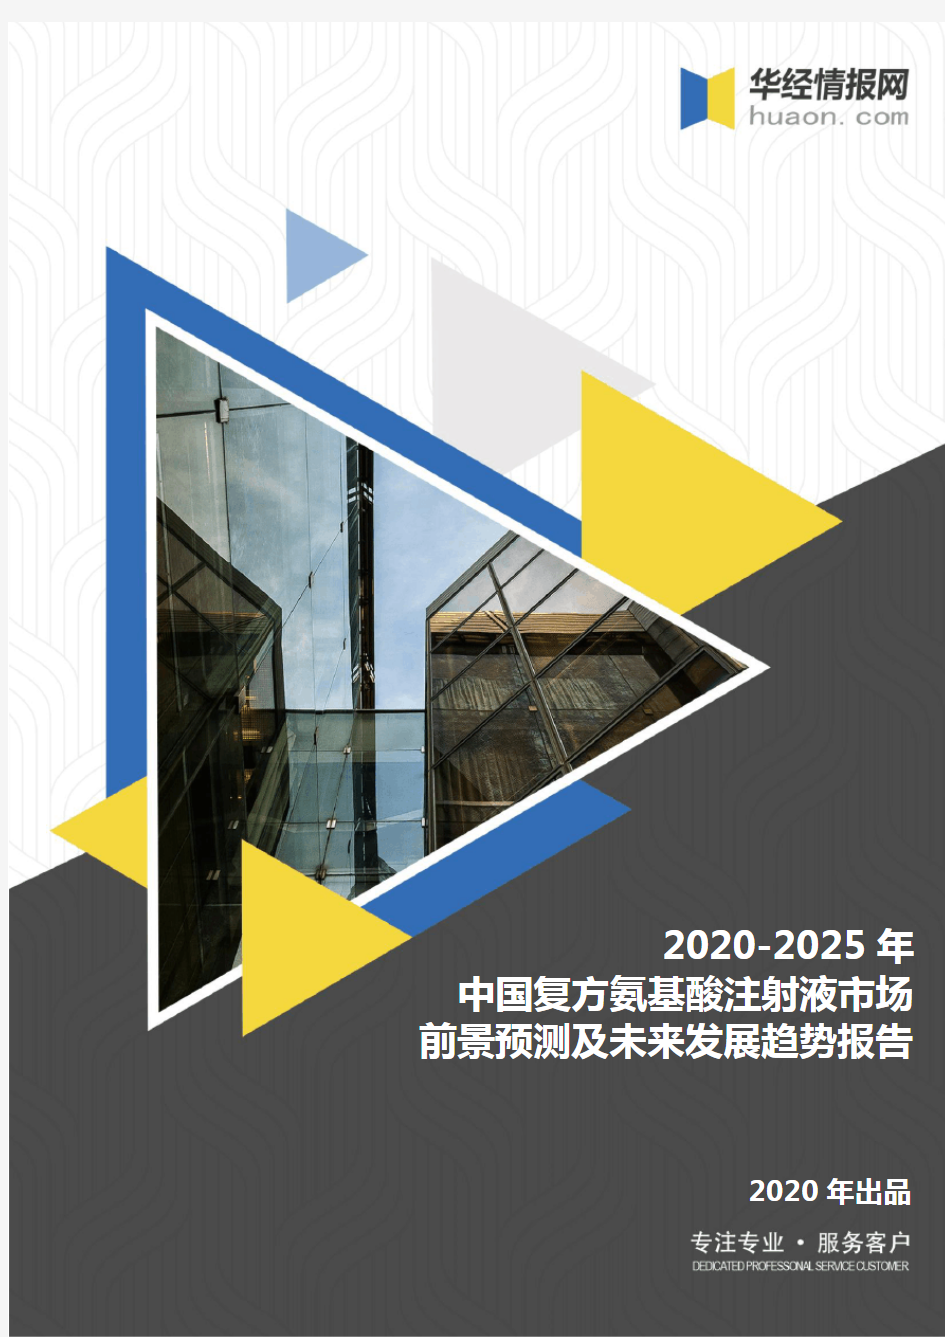 2020-2025年中国复方氨基酸注射液市场前景预测及未来发展趋势报告